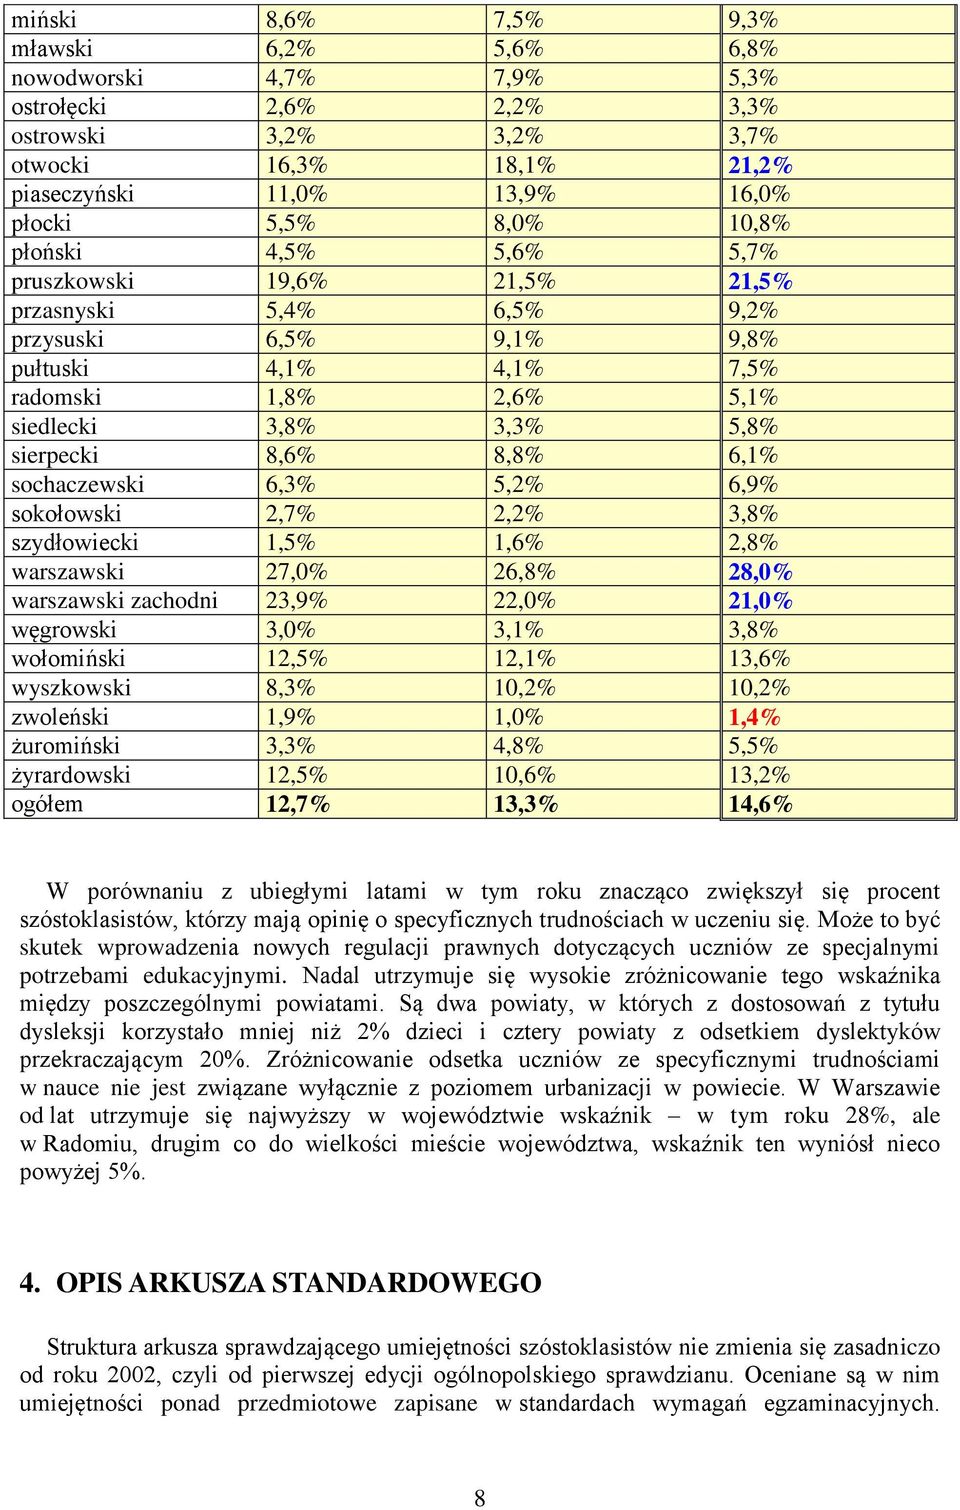 8,8% 6,1% sochaczewski 6,3% 5,2% 6,9% sokołowski 2,7% 2,2% 3,8% szydłowiecki 1,5% 1,6% 2,8% warszawski 27,0% 26,8% 28,0% warszawski zachodni 23,9% 22,0% 21,0% węgrowski 3,0% 3,1% 3,8% wołomiński